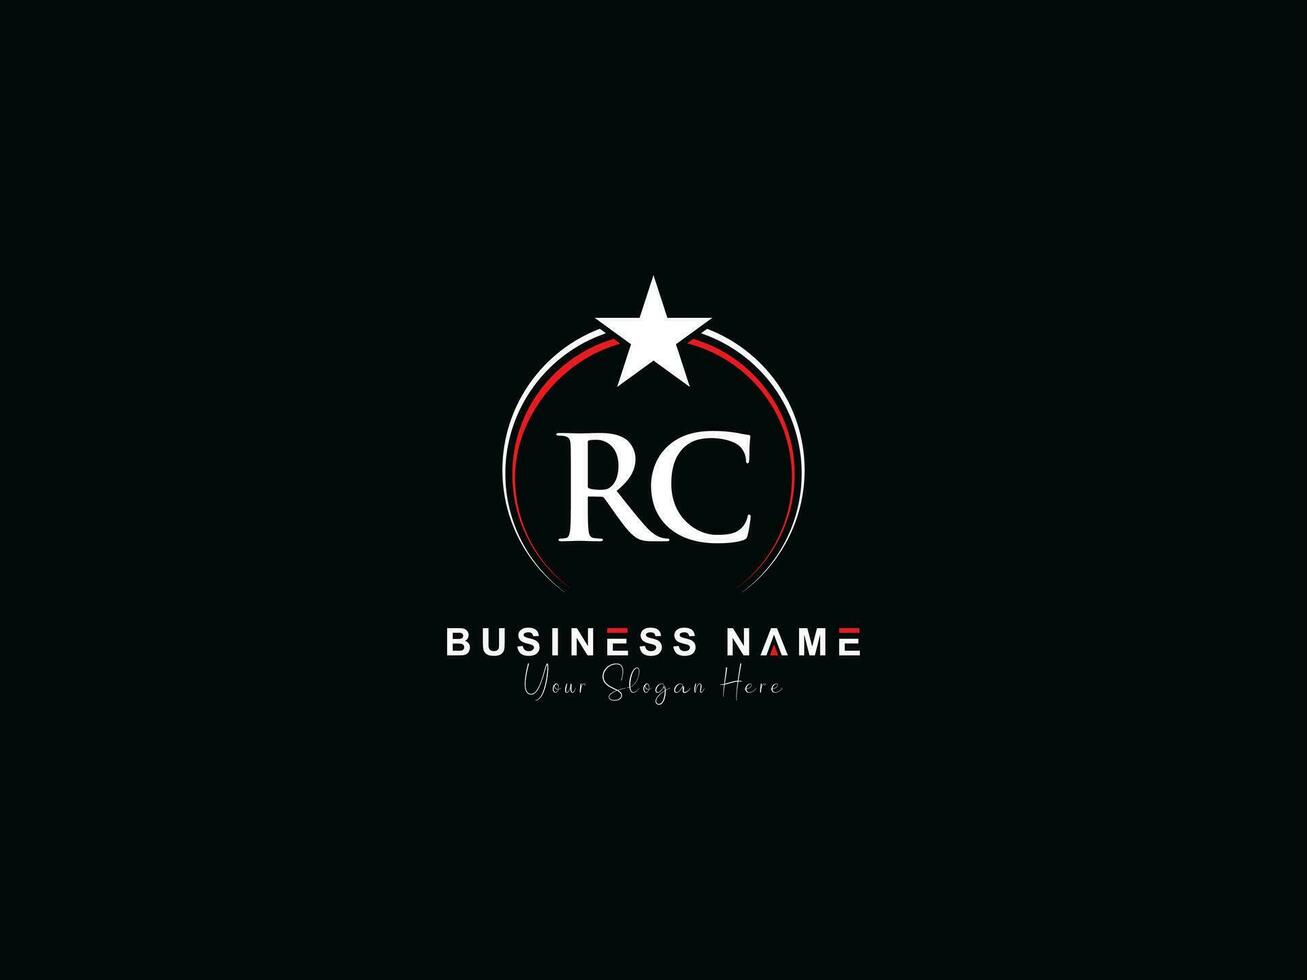 Royal étoile rc cercle logo, minimaliste luxe rc logo lettre vecteur